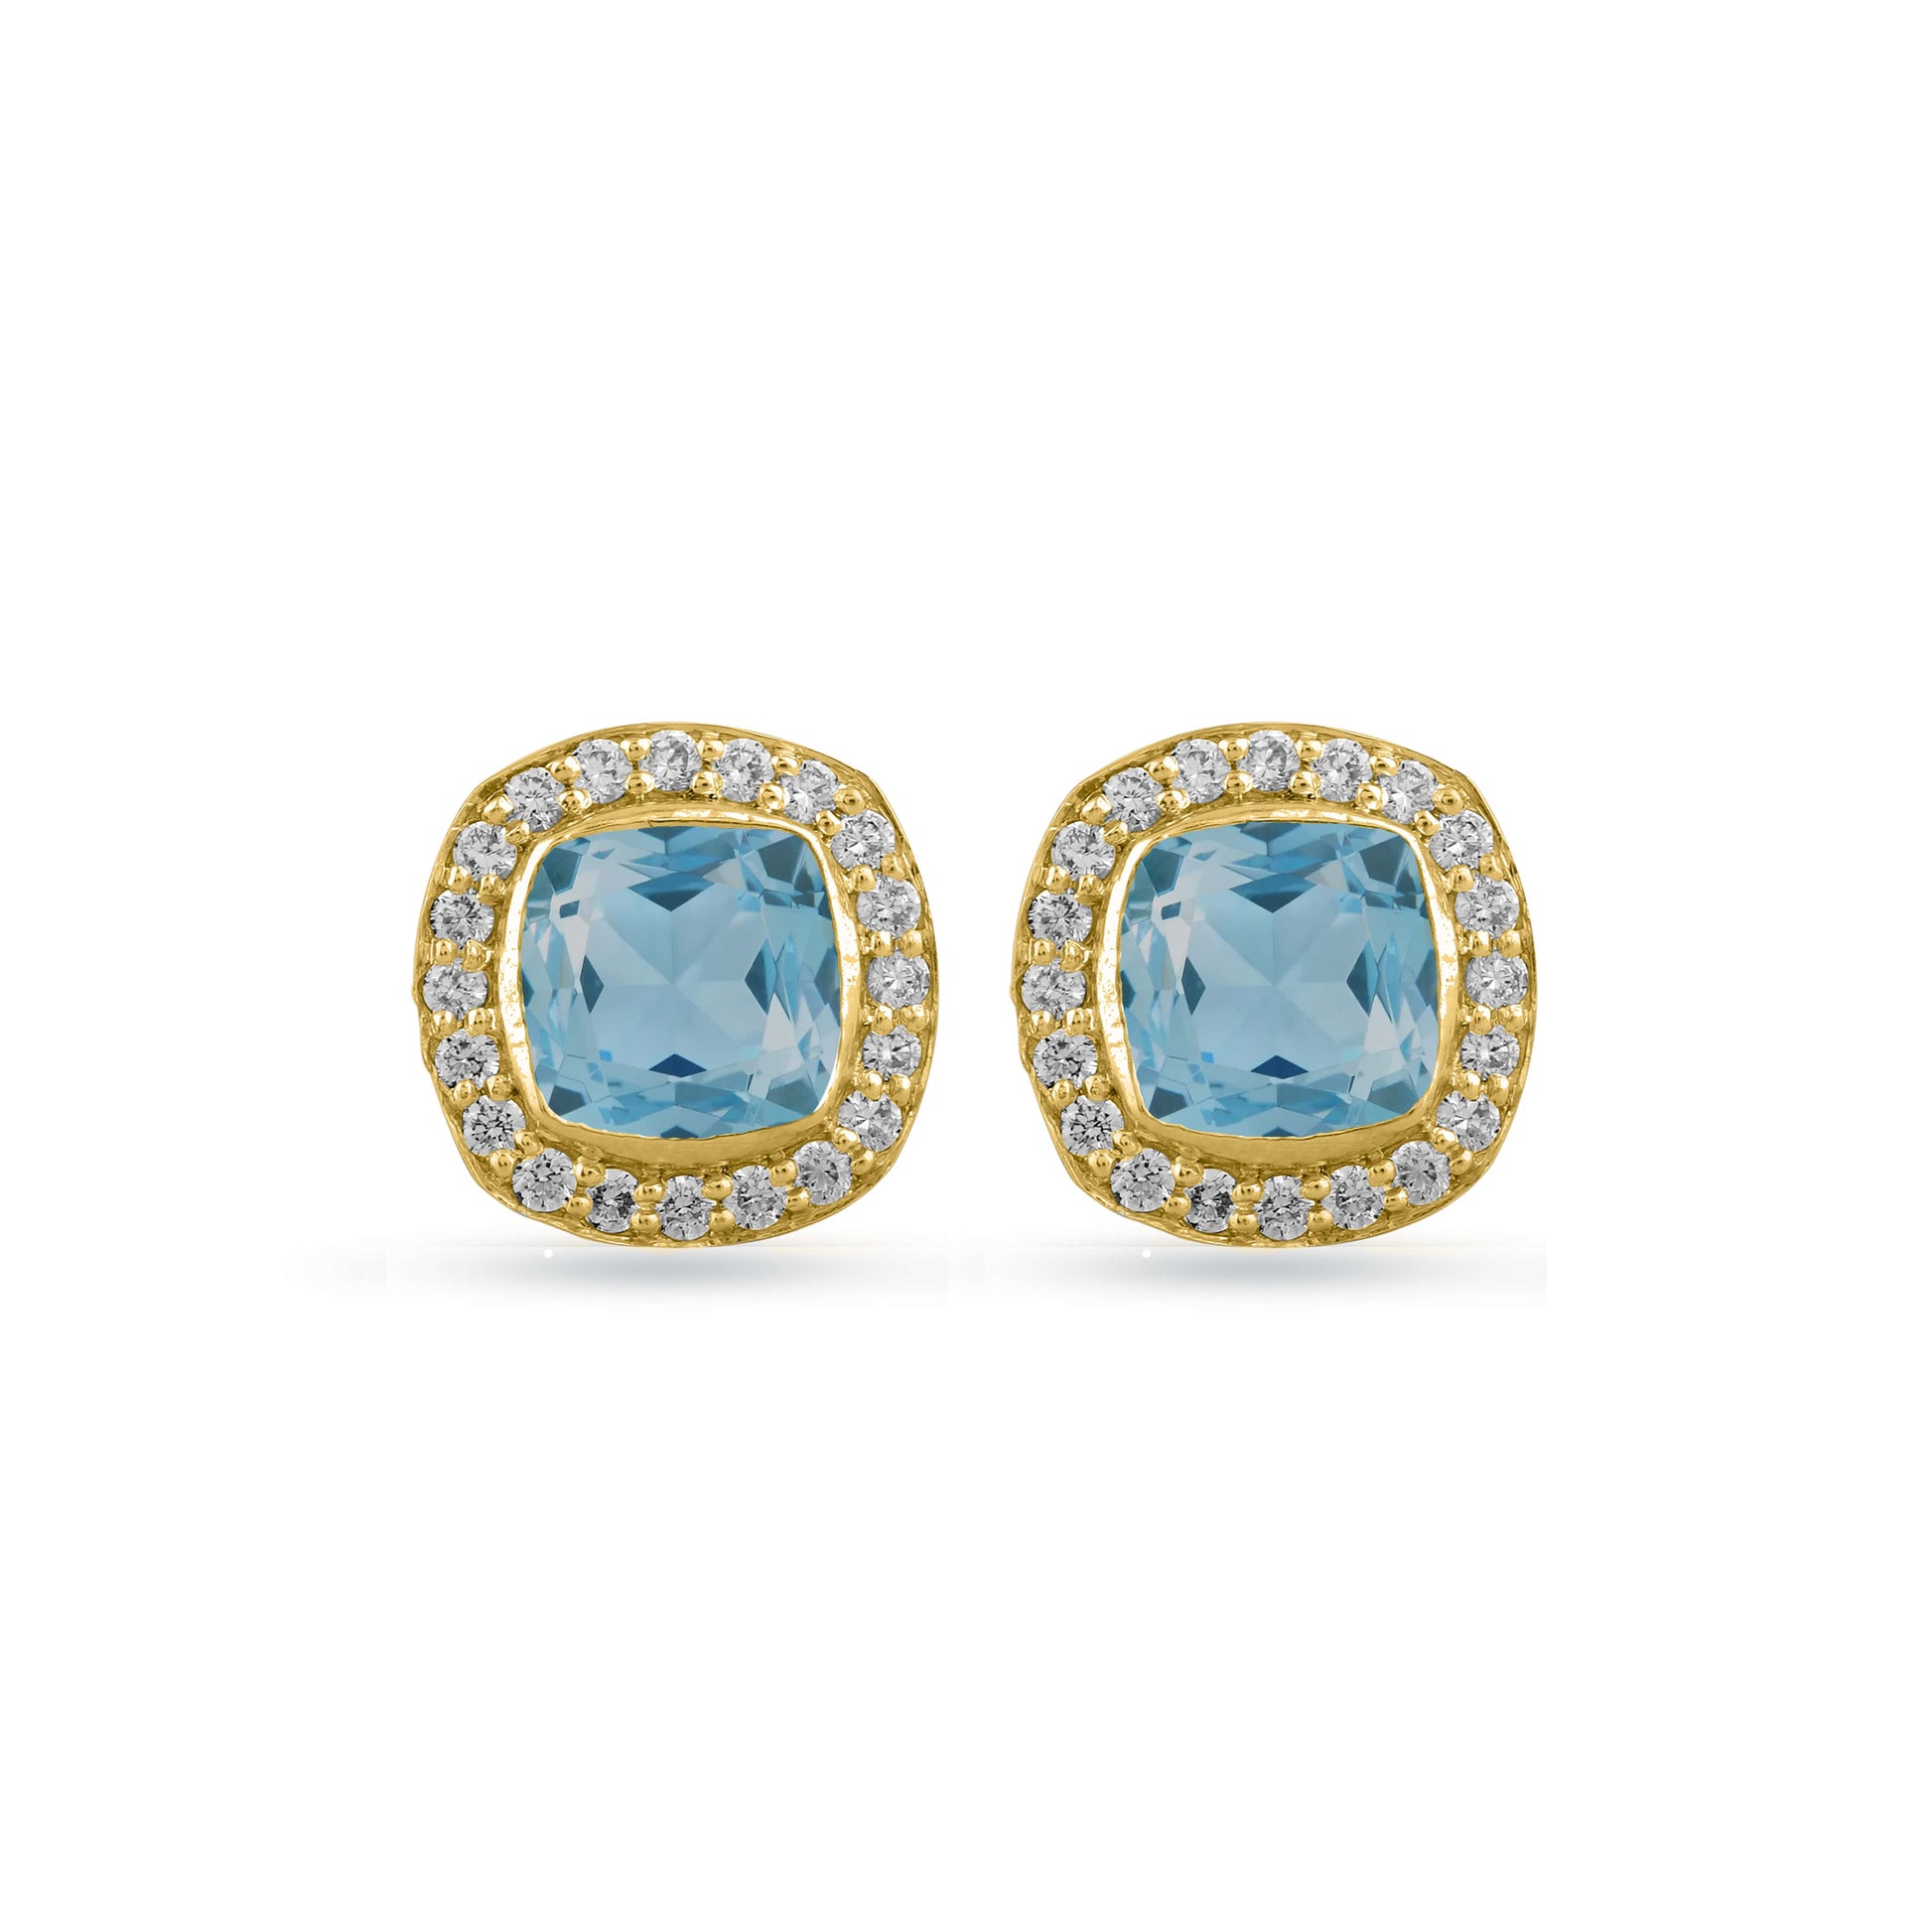 Aquamarine diamond Halo earring in yellow gold